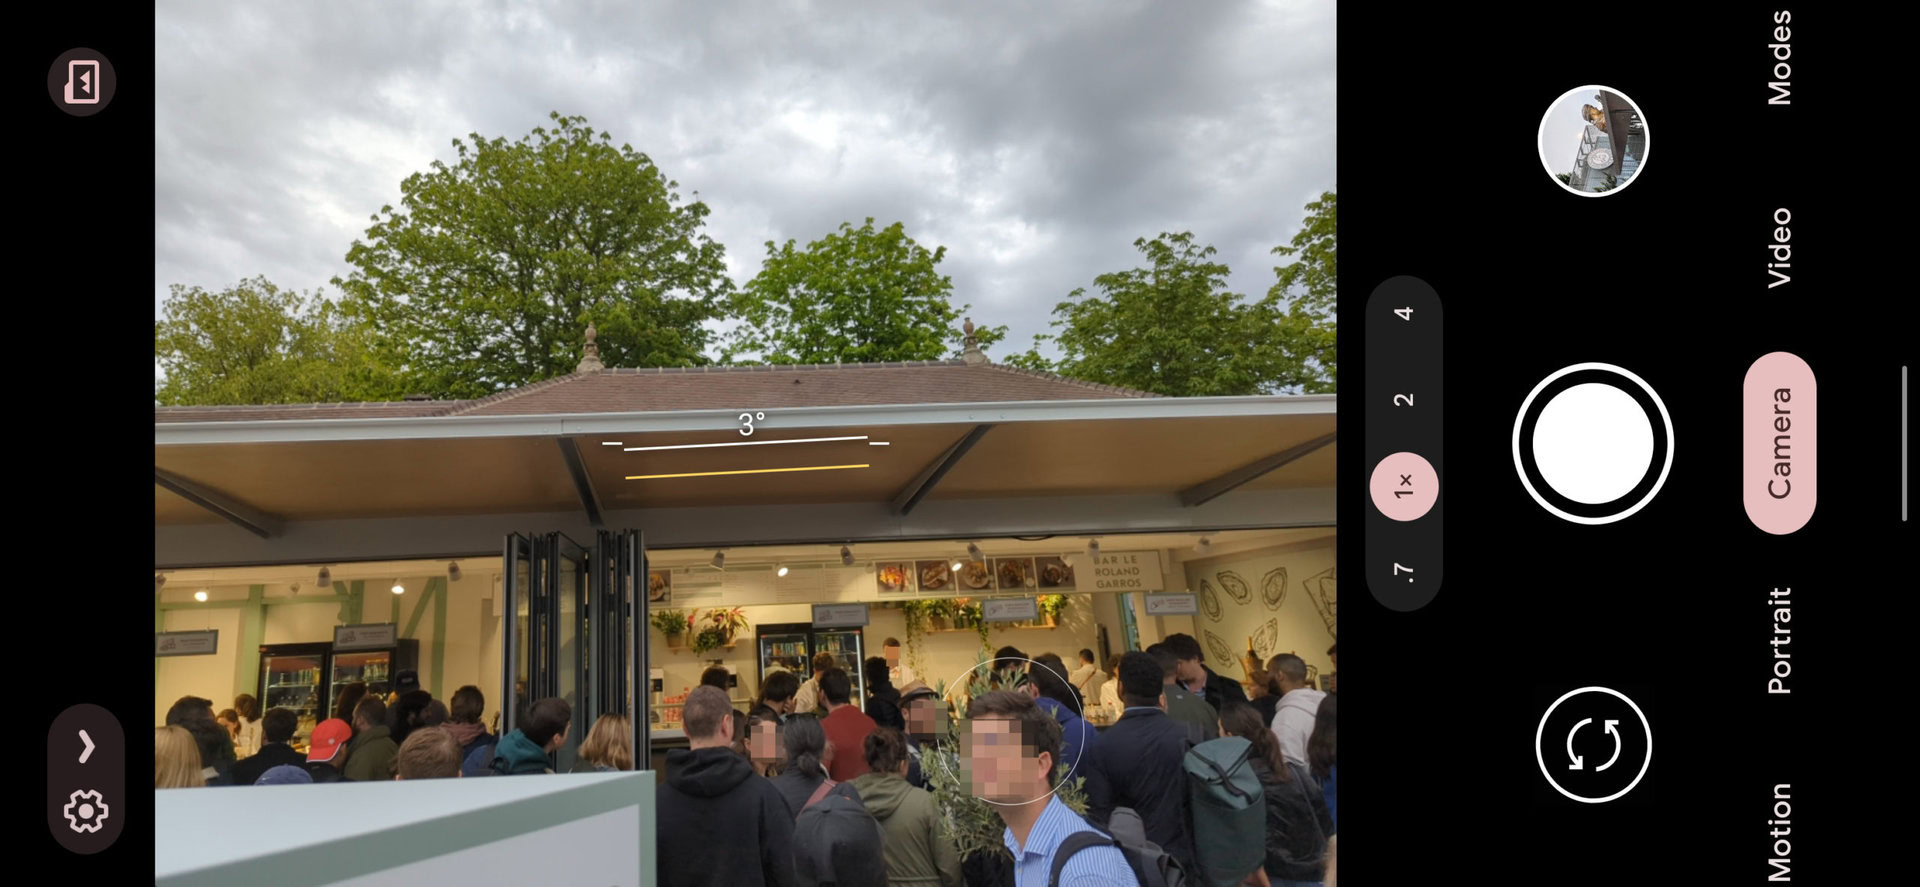 Captură de ecran a camerei Google Pixel 6 Pro 1x care arată un magazin alimentar cu o coadă lungă